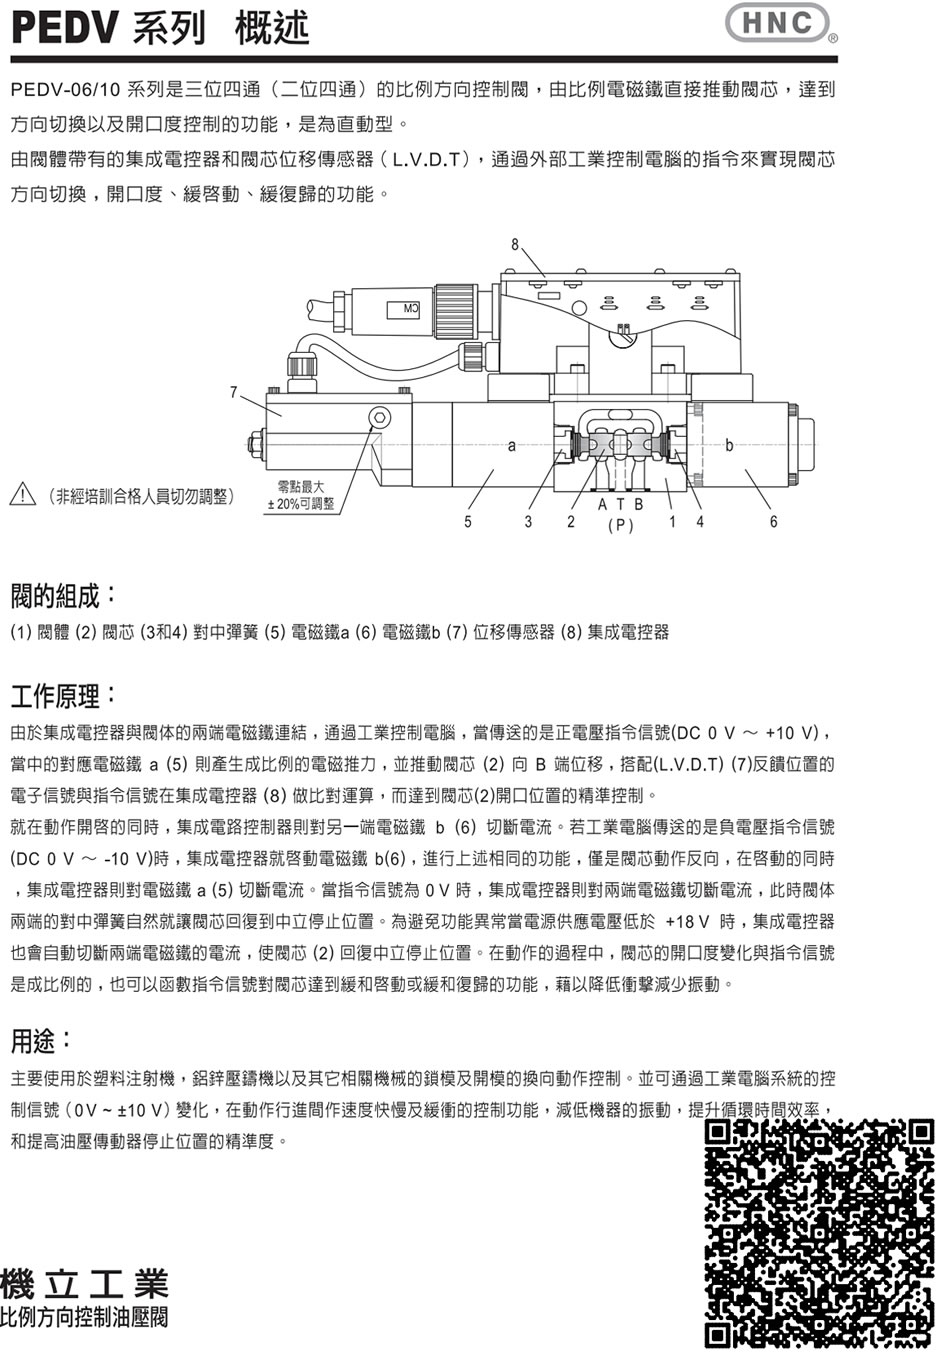 台湾机立比例方向油压阀概述、阀的组成、工作原理、用途